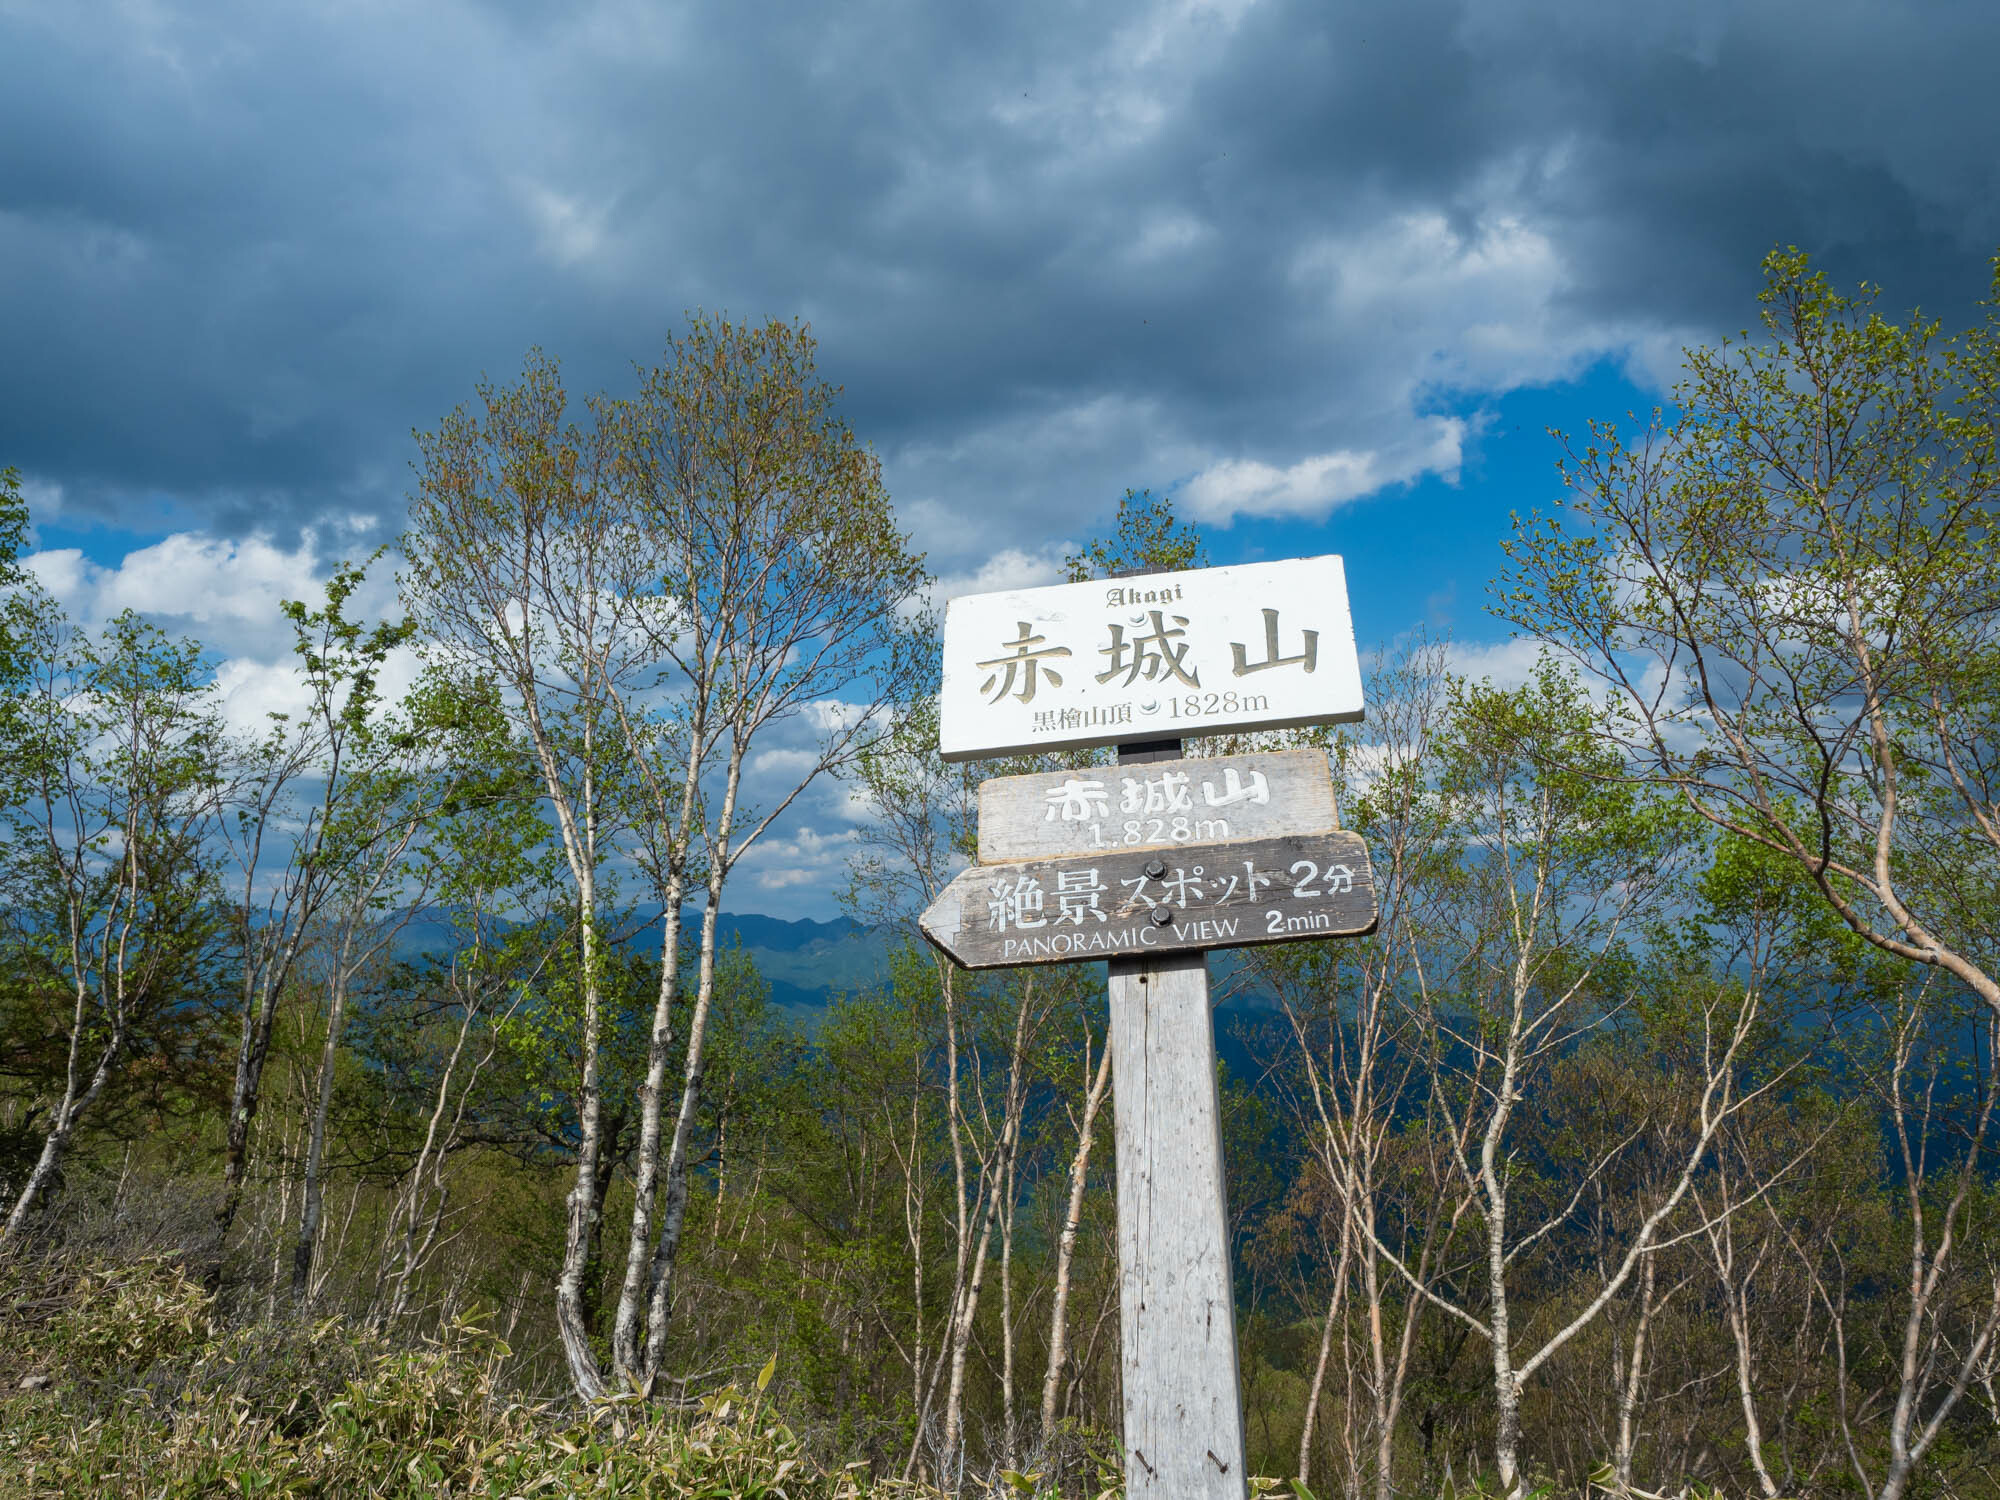 黒檜山山頂。この先に展望スポットがあり谷川岳や奥日光連山を見渡すことができる。